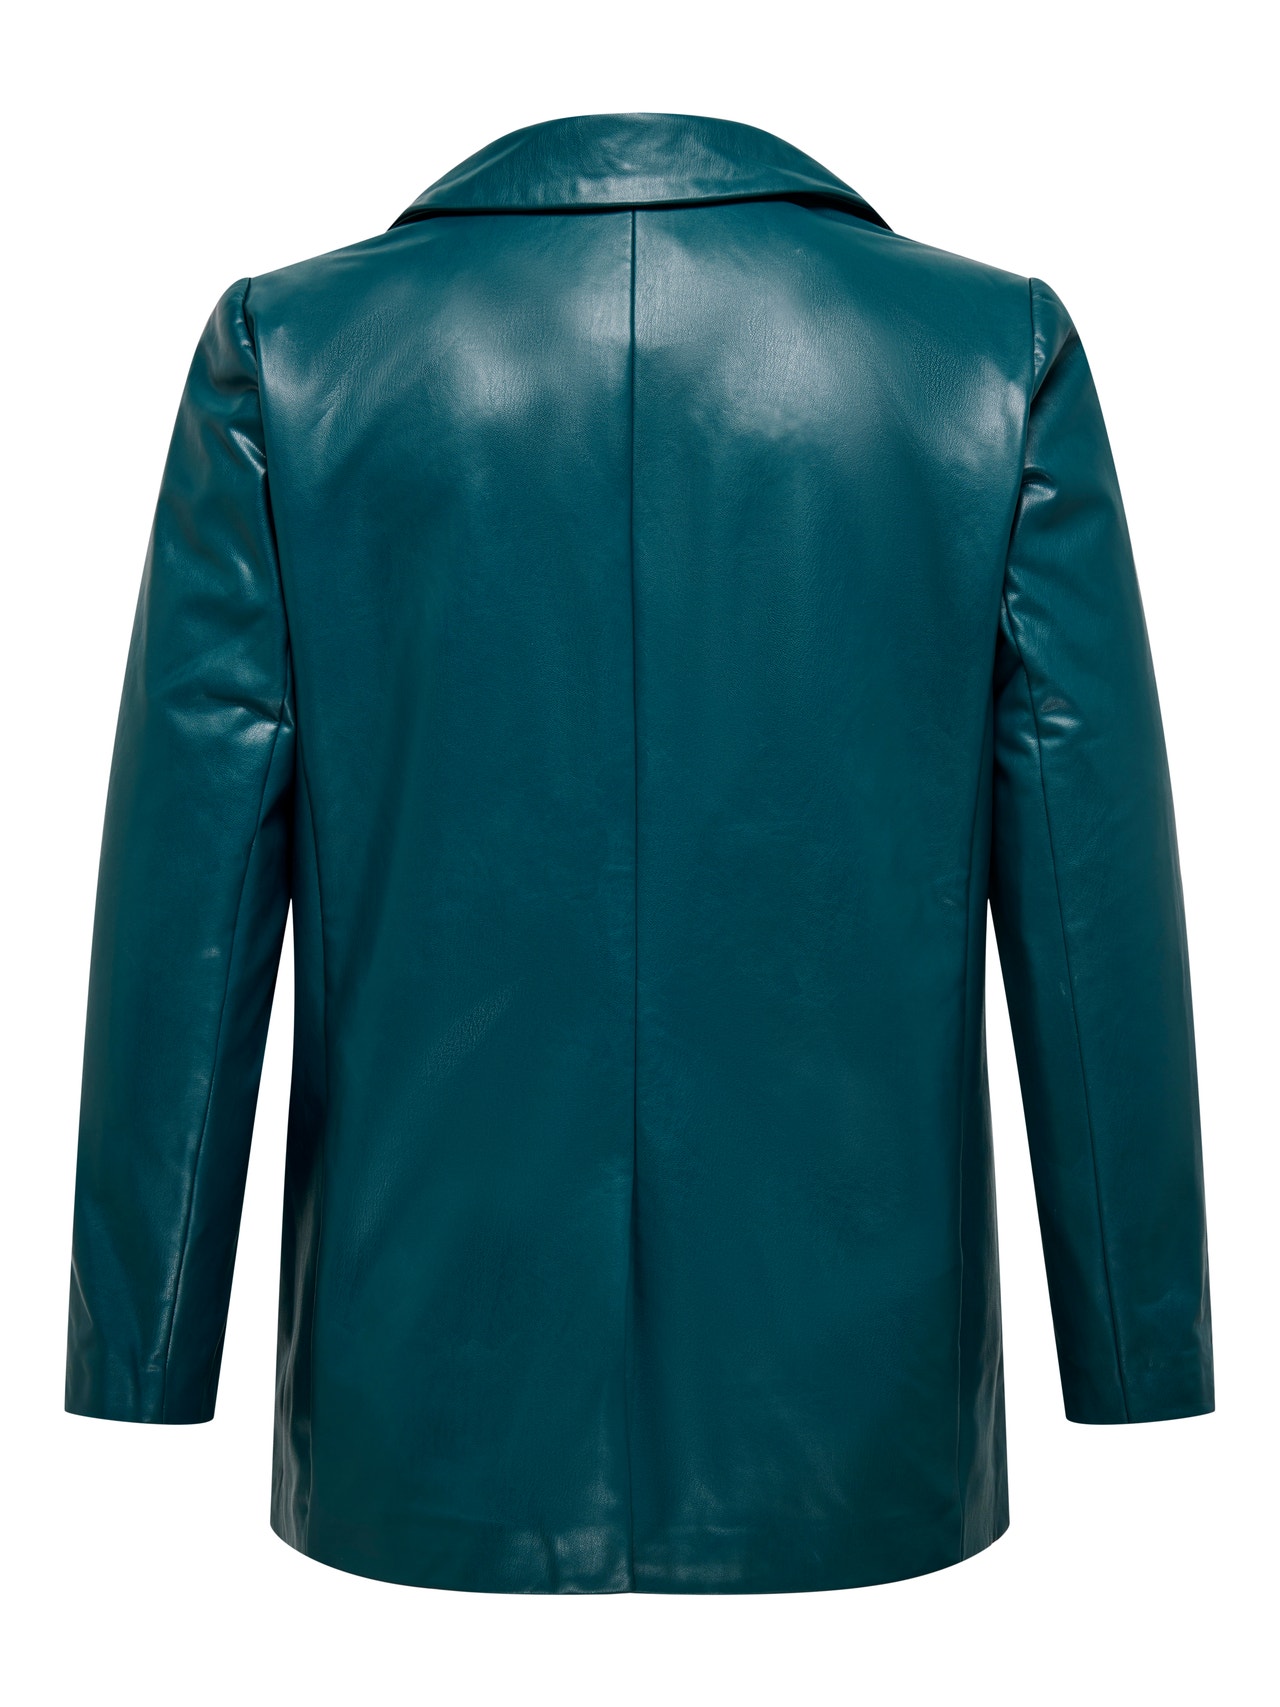 ONLY Curvy faux leather blazer -Dark Sea - 15295527